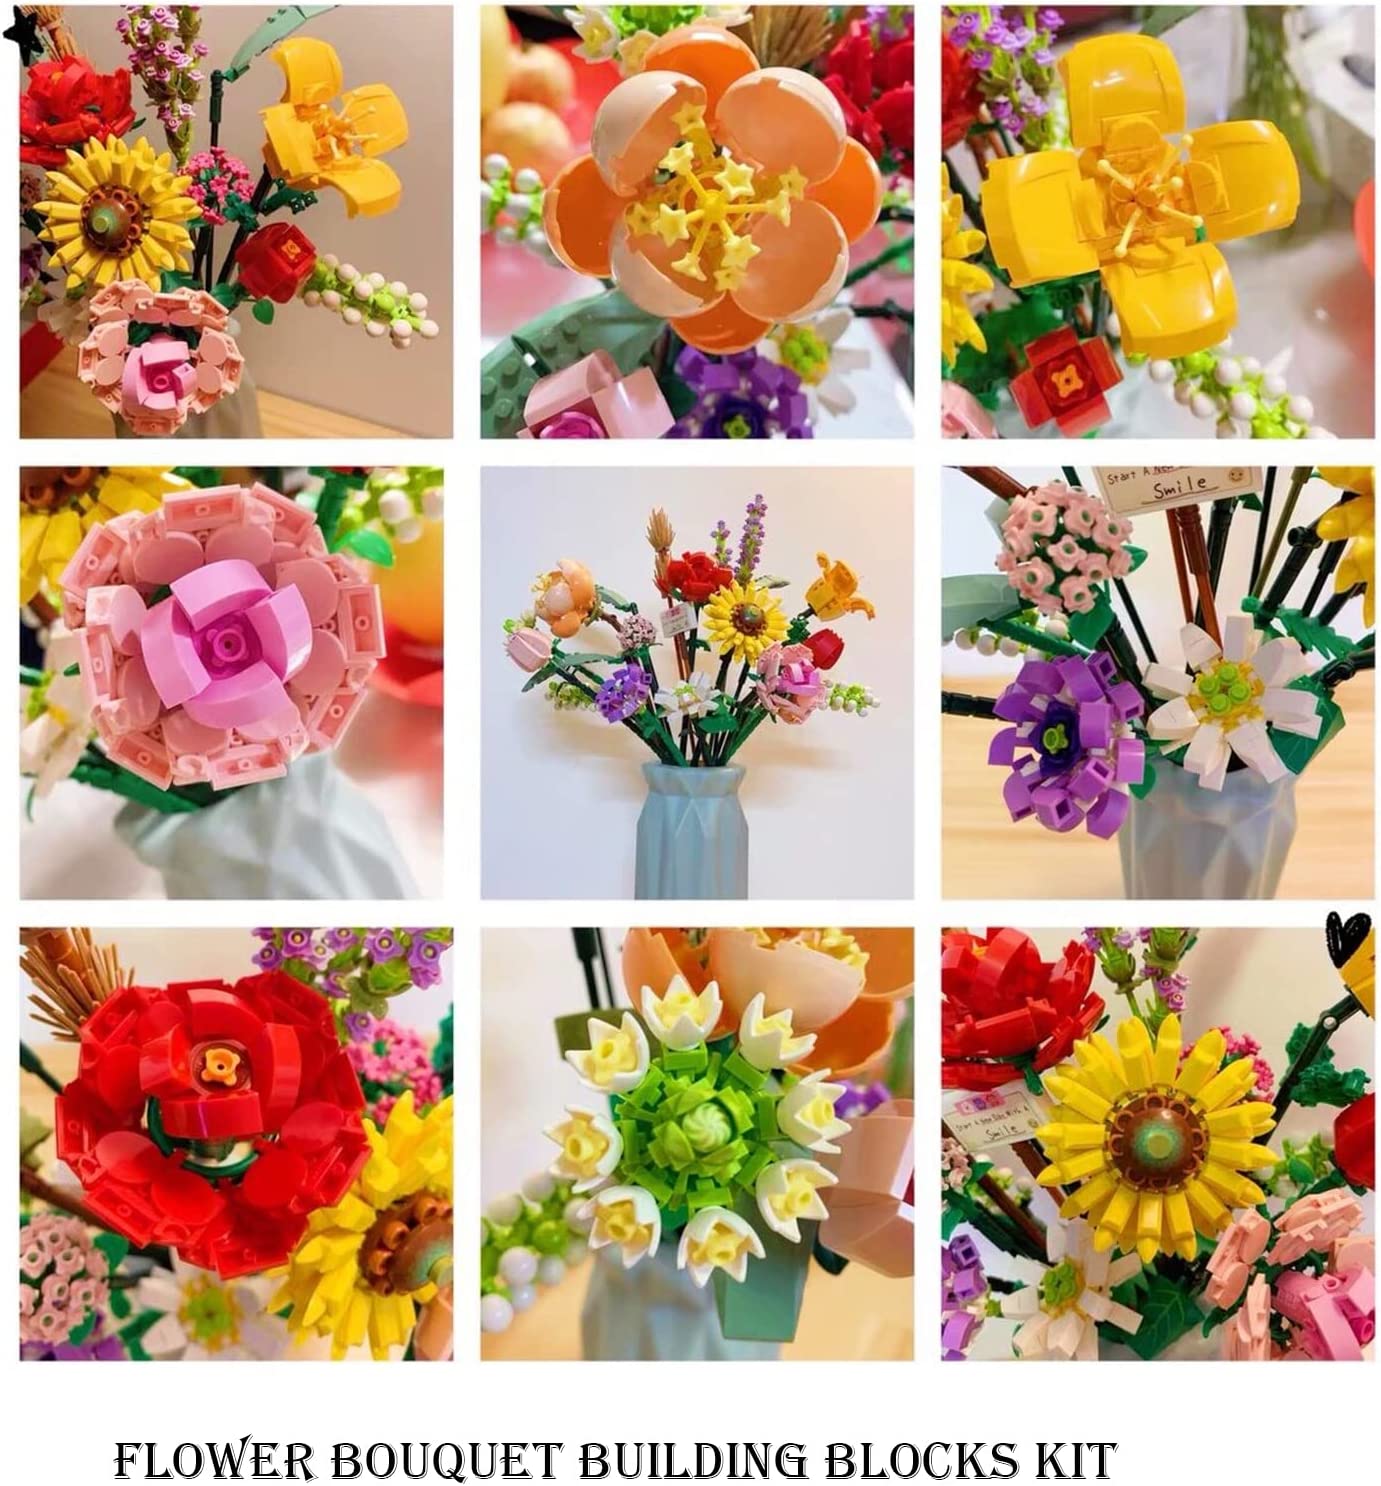 Flowers Bouquet Building Kit Sets, Unique Gift Valentine's Day